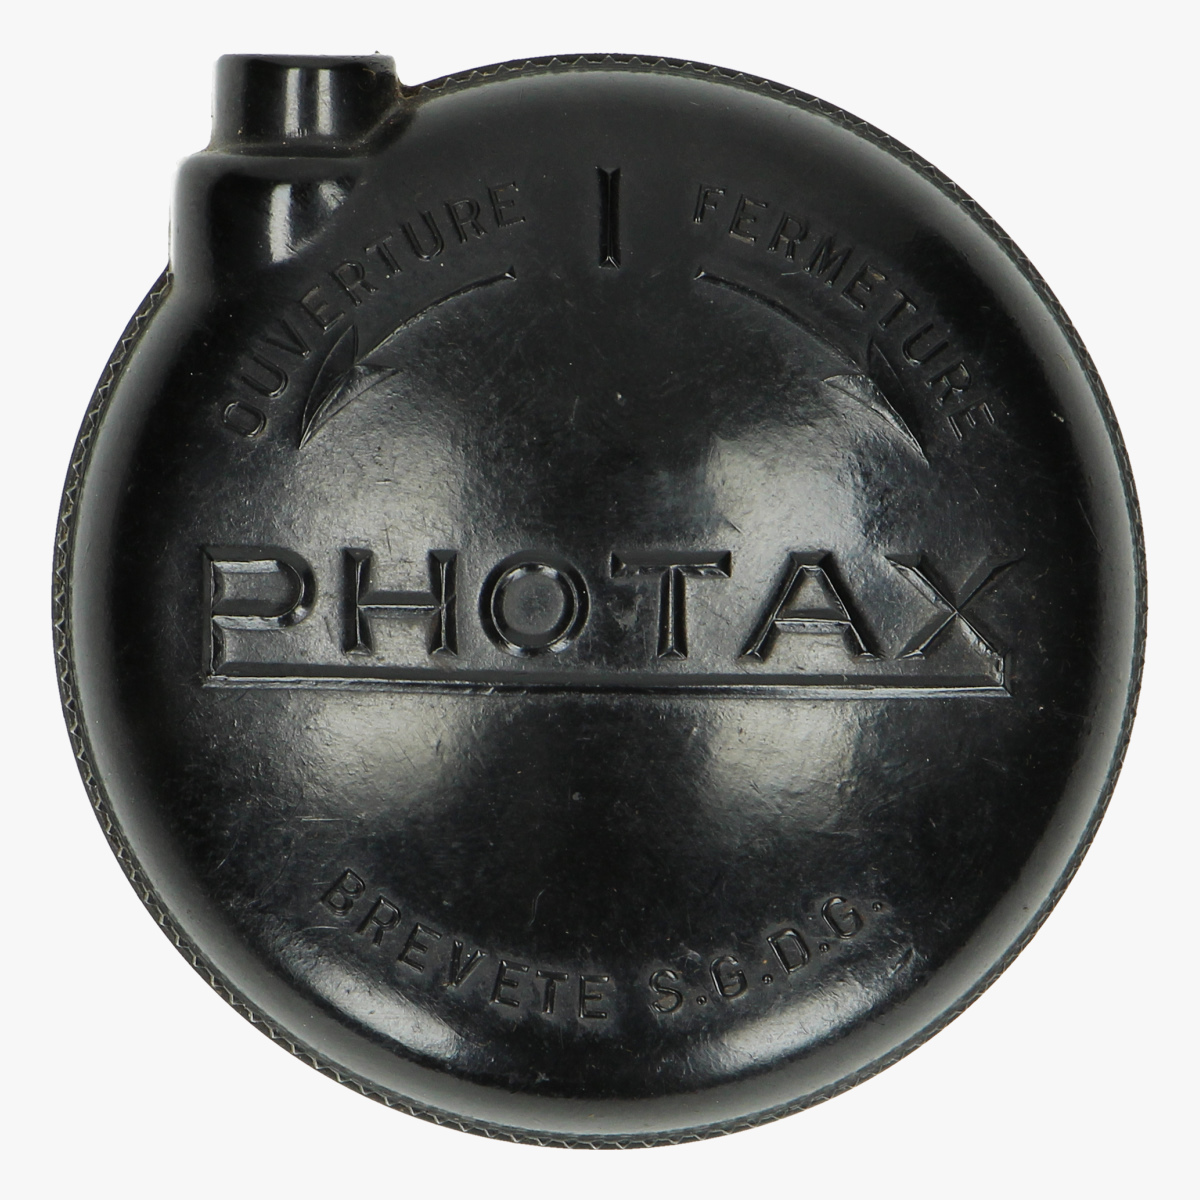 Afbeeldingen van bakelieten fotocamera photax boyer lens